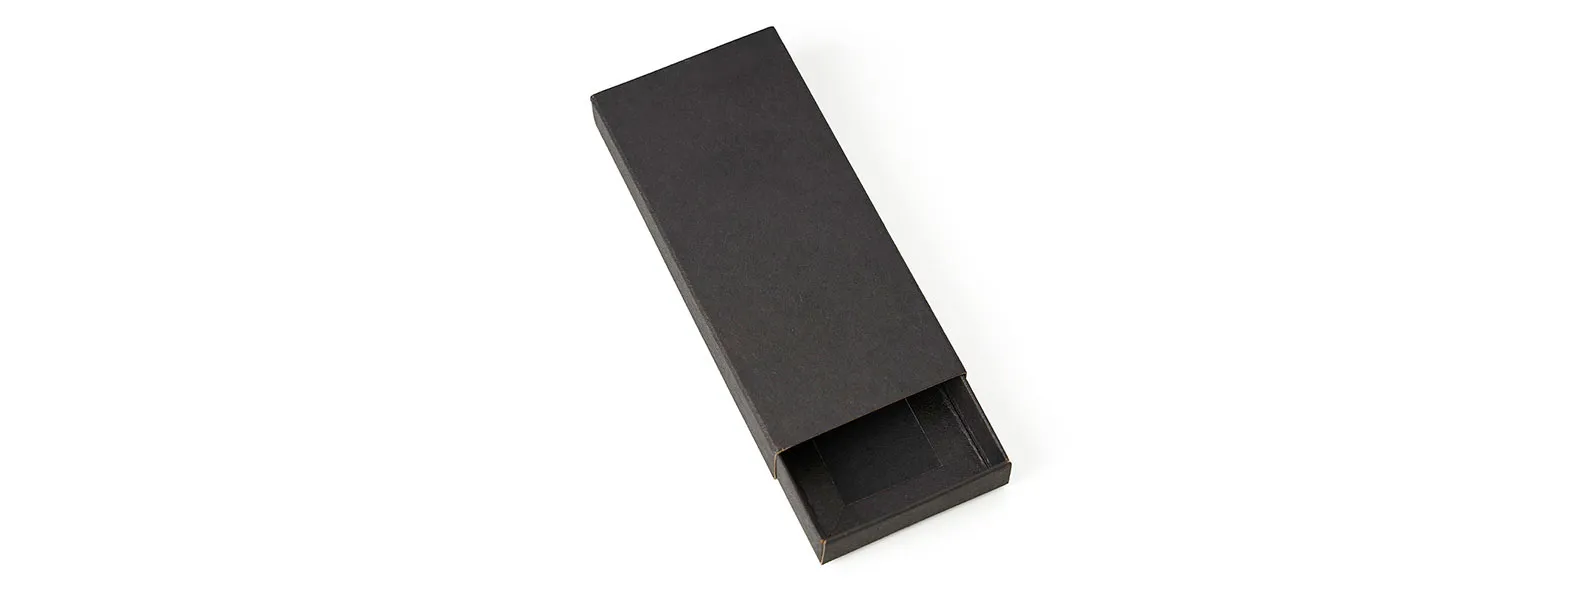 Confeccionado em metal cromado brilhante e material sintético preto, possui argola com Ø 3cm e está acomodado em uma embalagem interna aveludada e caixa kraft com tampa fechada em cordão elástico preto para presente.